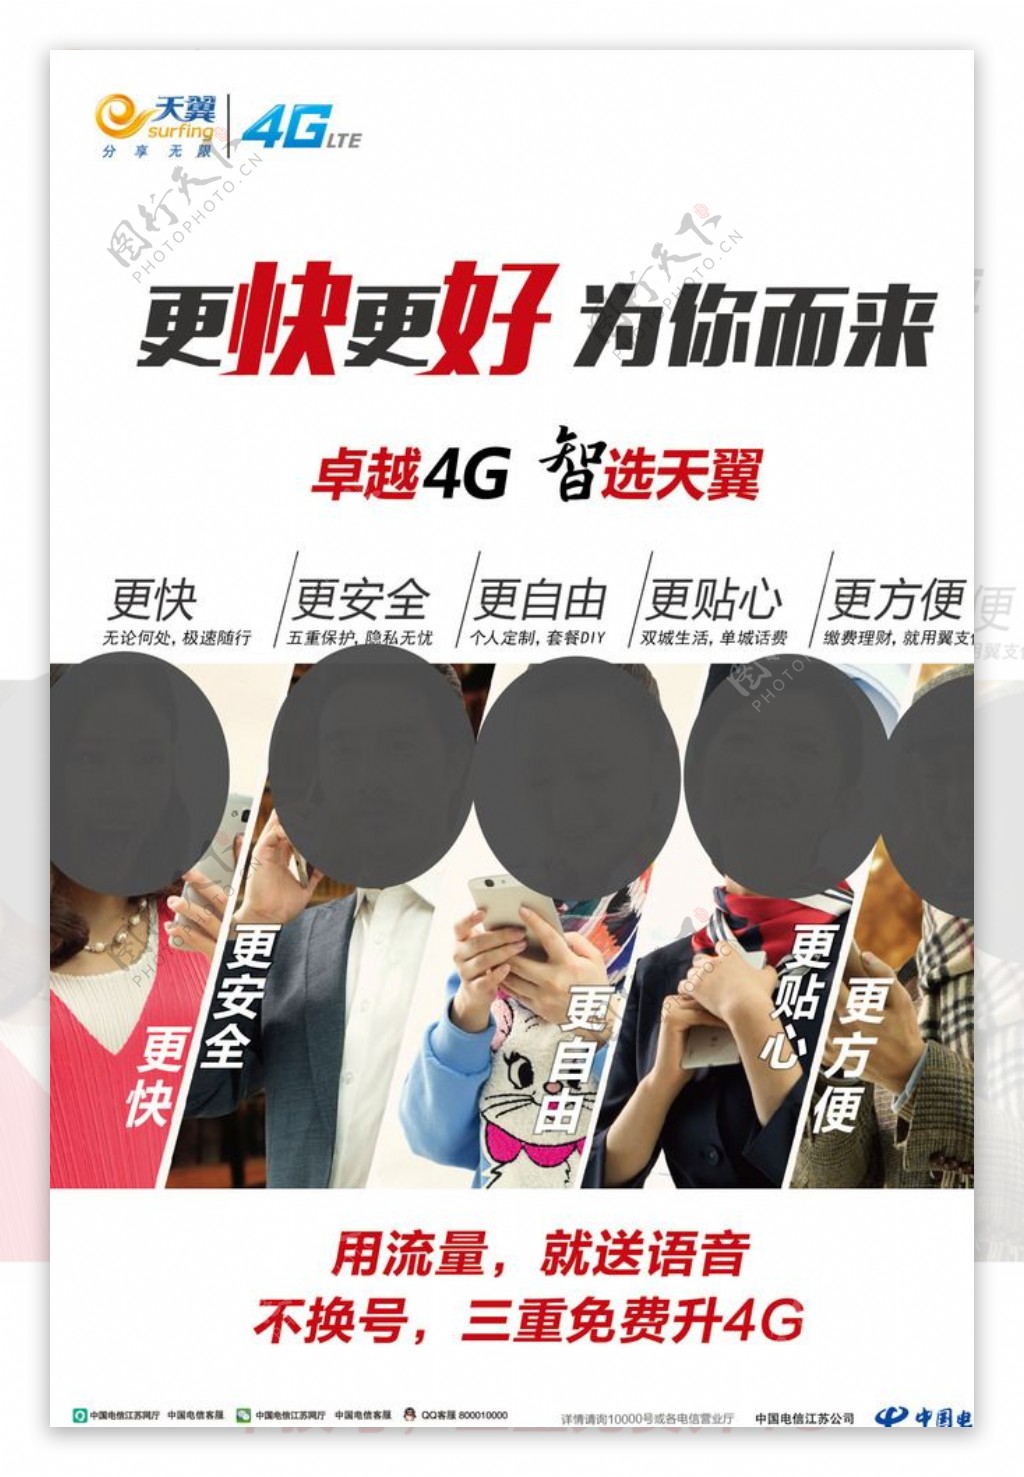 从2G到4G+ 天翼UIM手机卡藏品欣赏 - 深圳IT外包